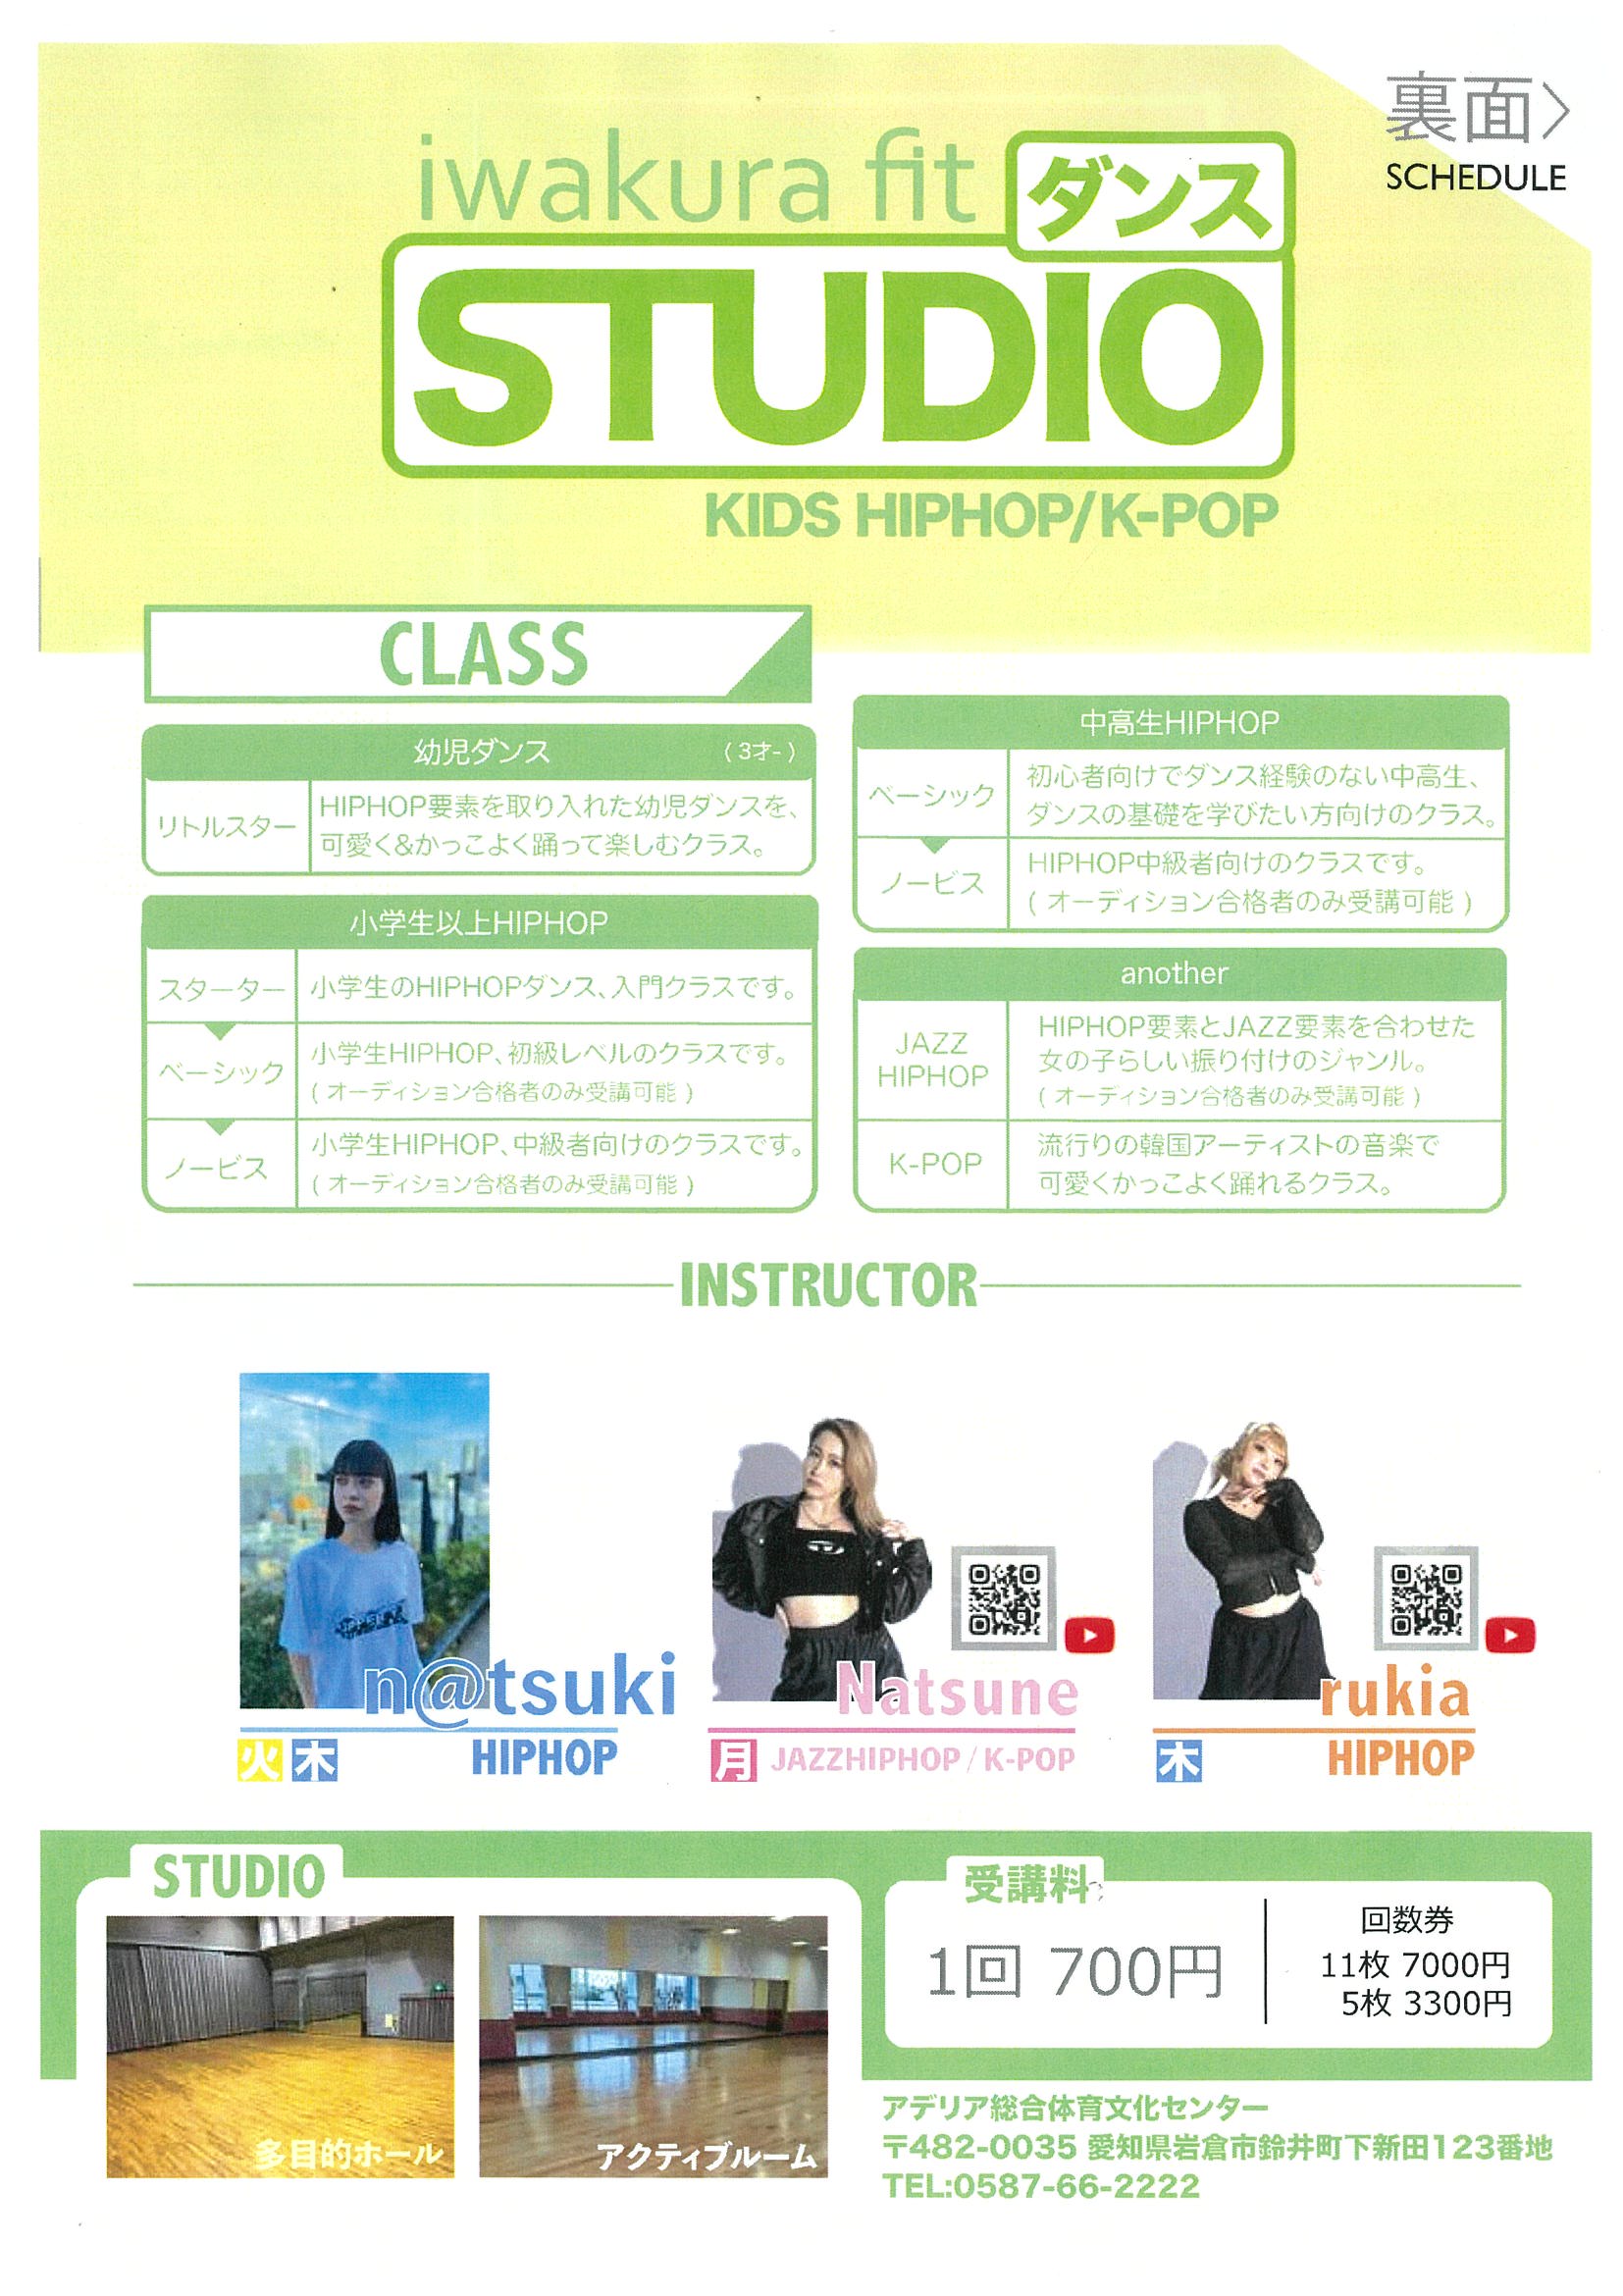 iwakura fit dance studio